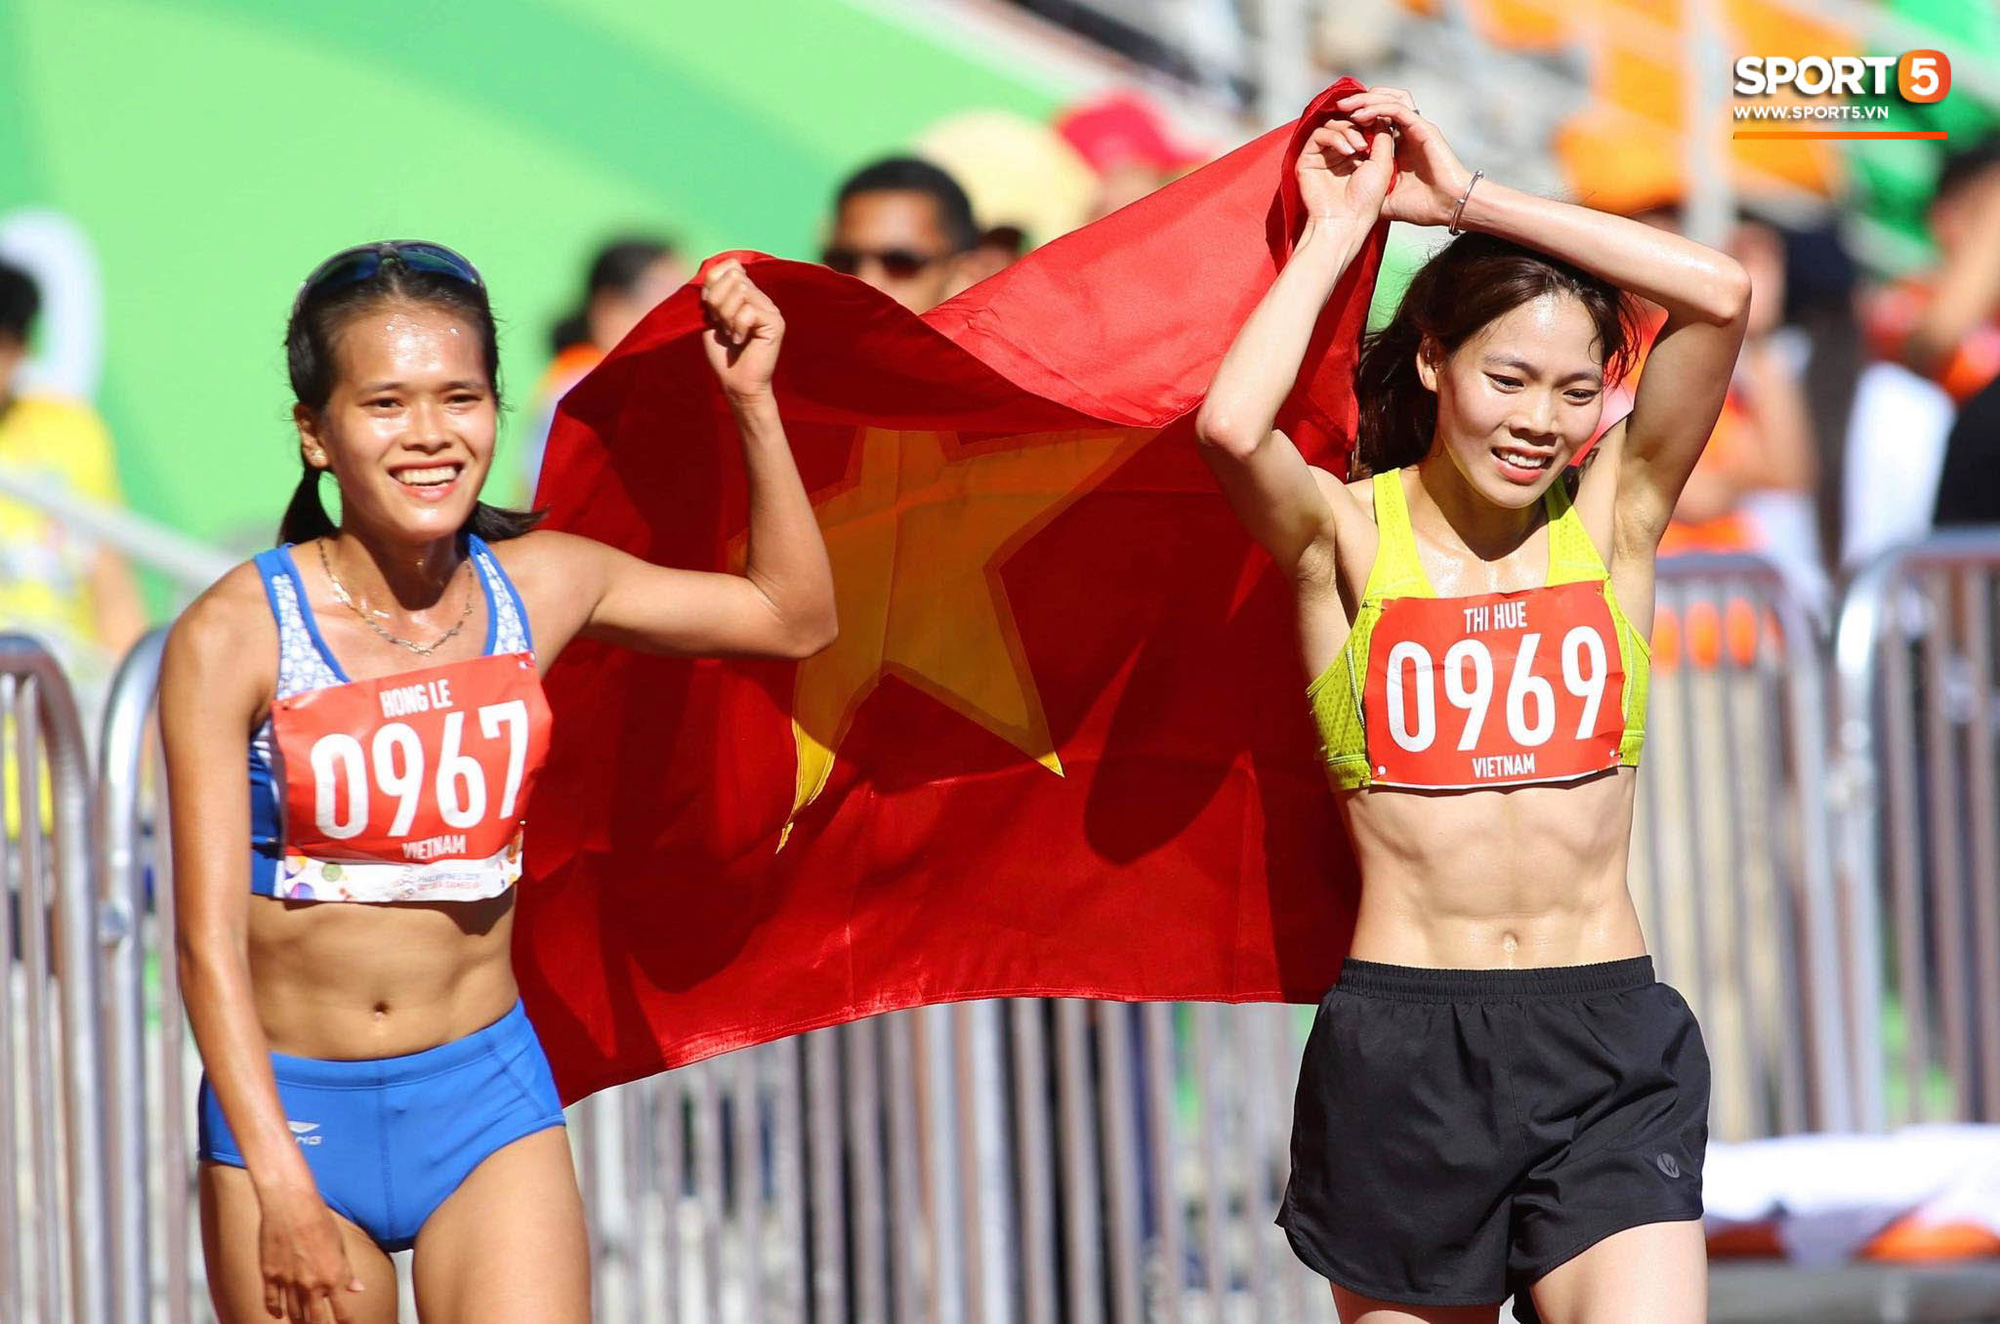 Nữ hoàng chân đất của điền kinh Việt Nam Phạm Thị Huệ: Nén cơn đau dạ dày để giành huy chương vàng sau 2 kỳ đại hội chỉ về nhì - Ảnh 3.